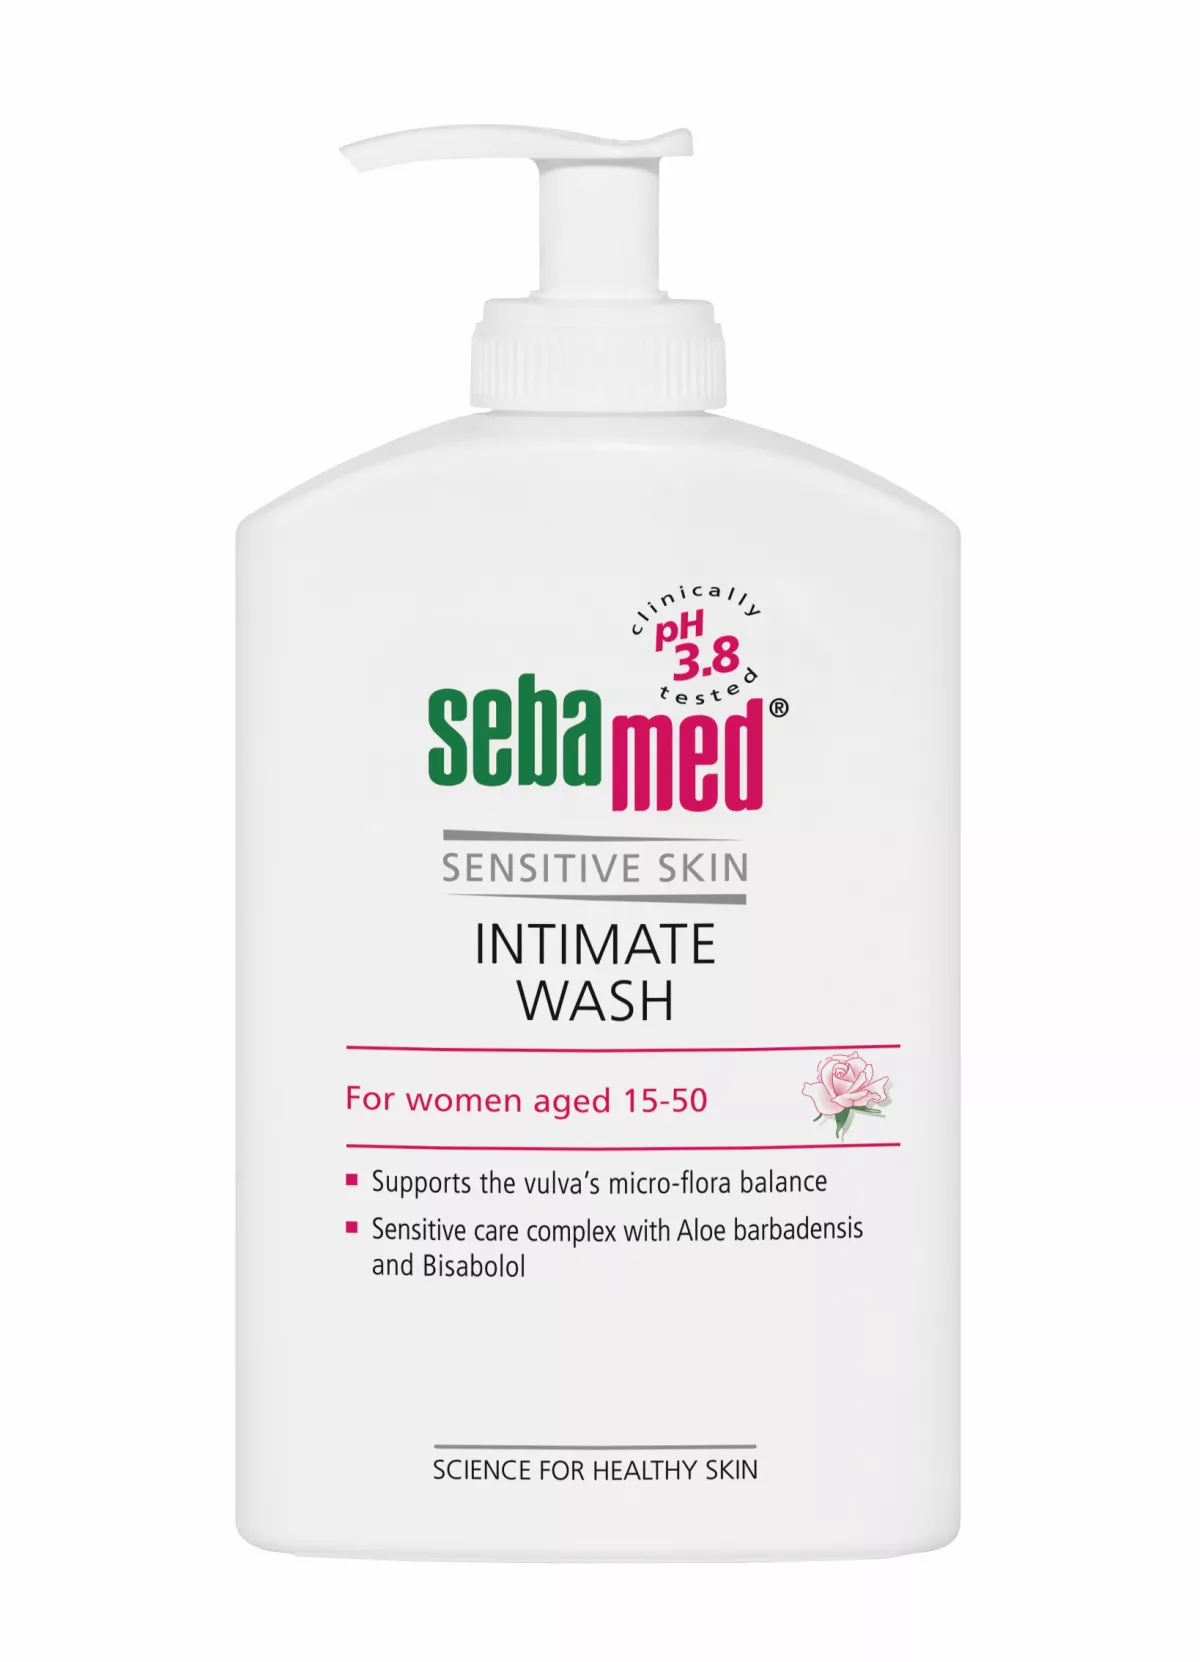 Sebamed Sensitive Skin Gel dermatologic pentru igiena intimă feminină (15-50 ani) * 400 ml, [],clinicafarm.ro